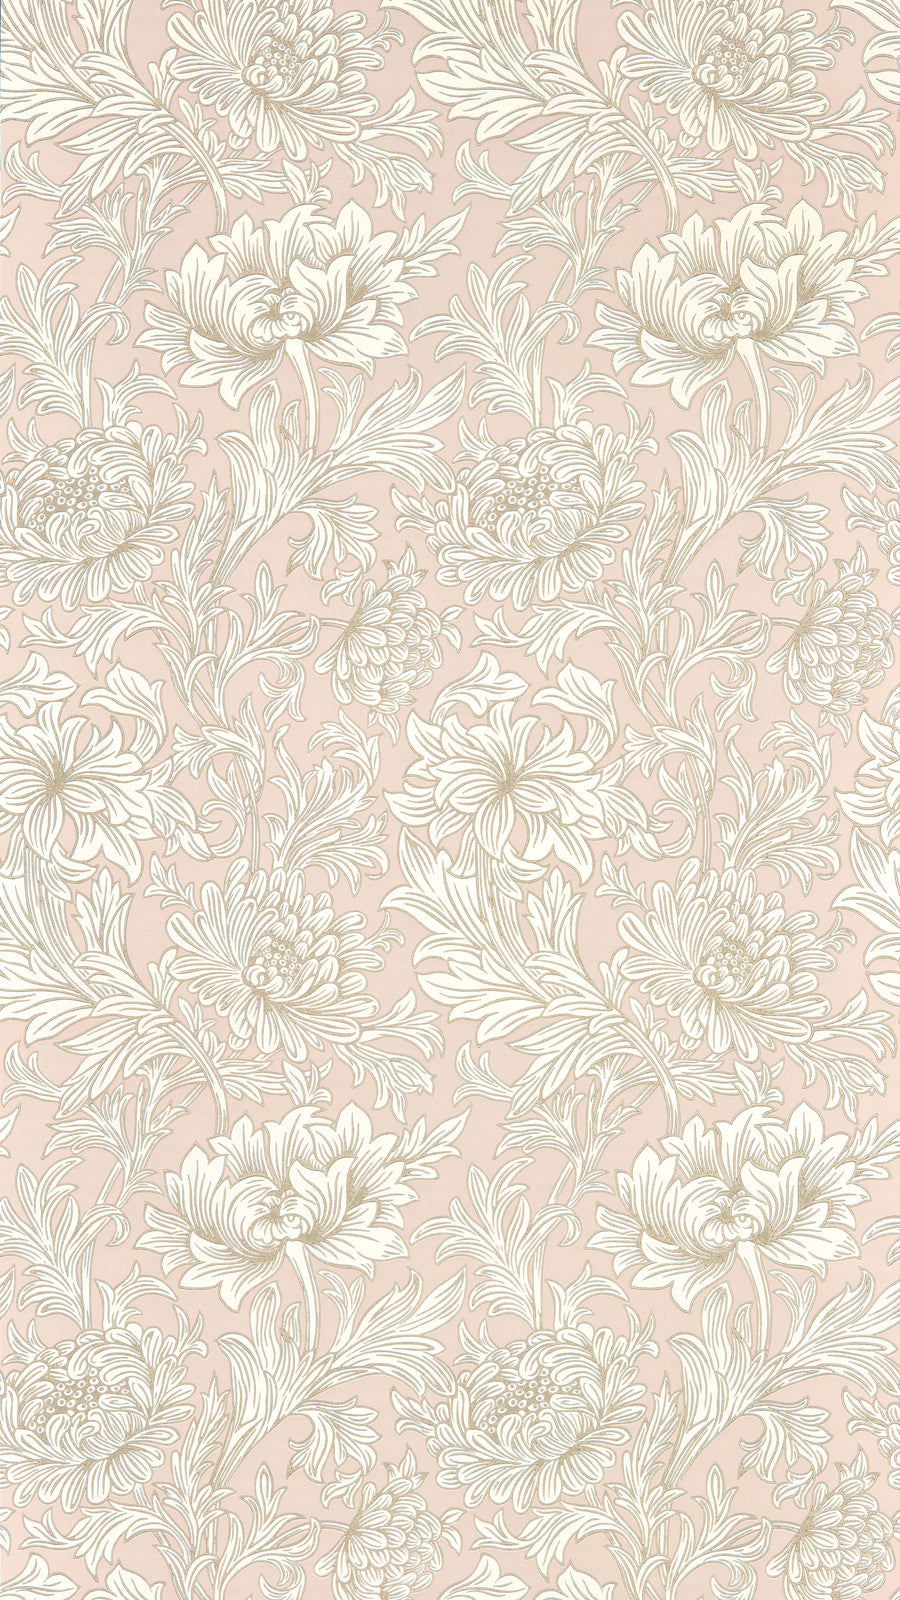 MORRIS & Co.(ウィリアム・モリス) / SIMPLY MORRIS / Chrysanthemum Toile 217070